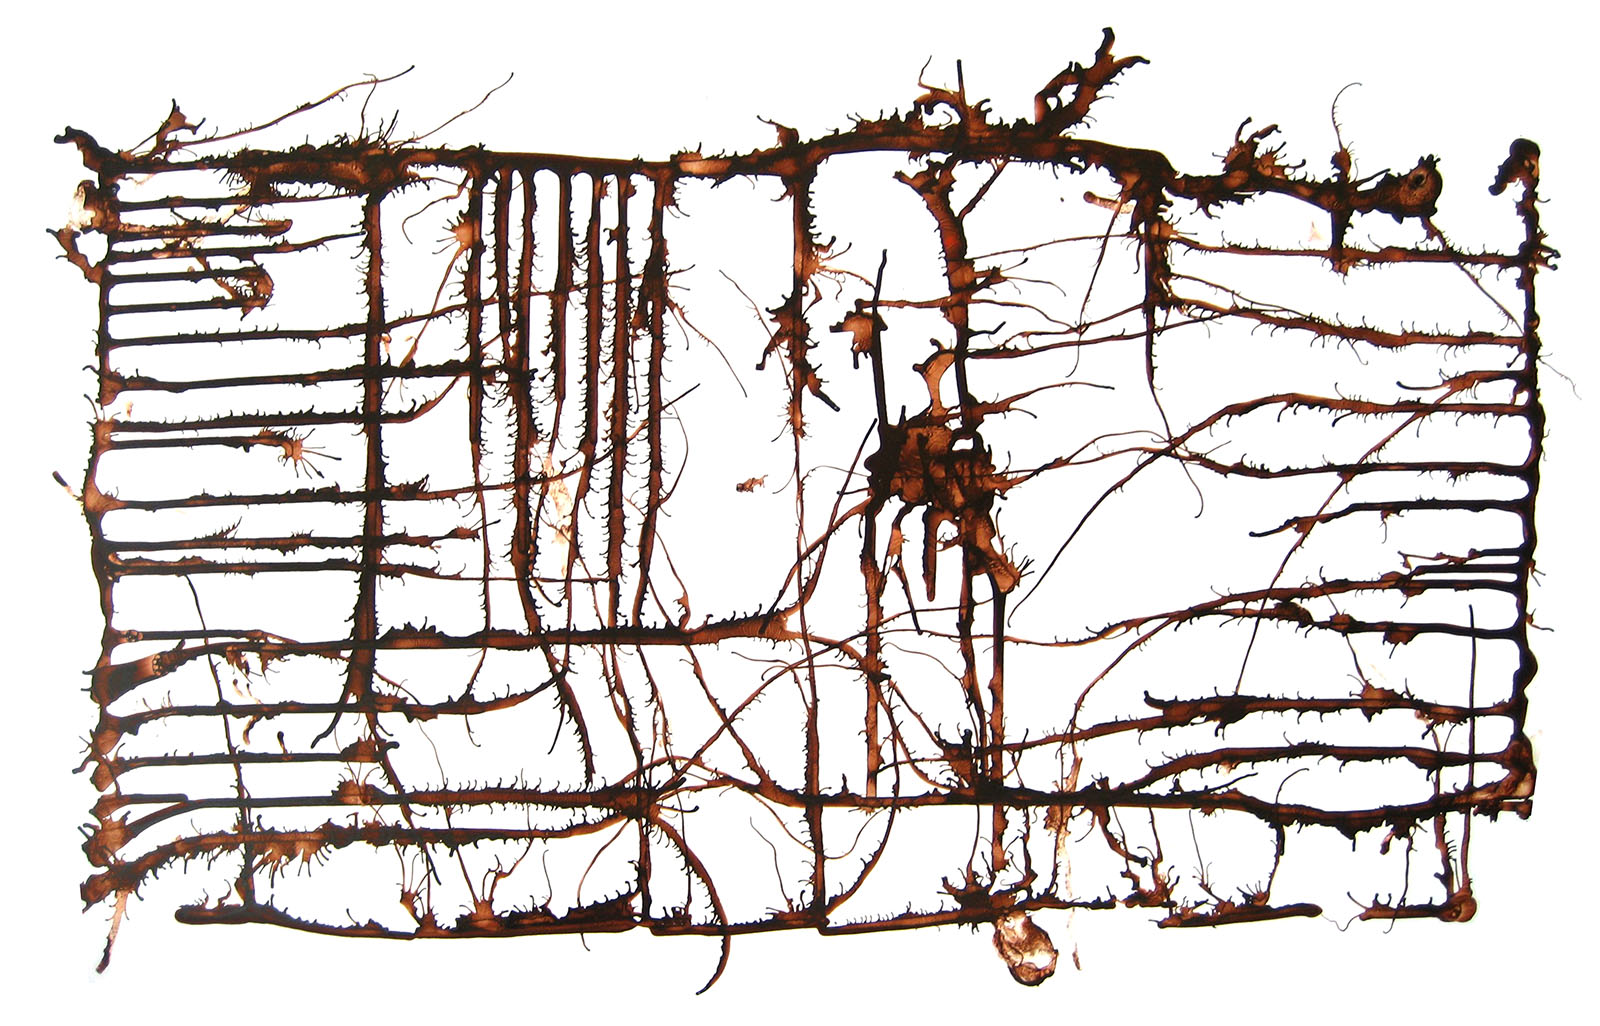 “Underground (grid),” 2009, ink on paper, 23in x 35in.